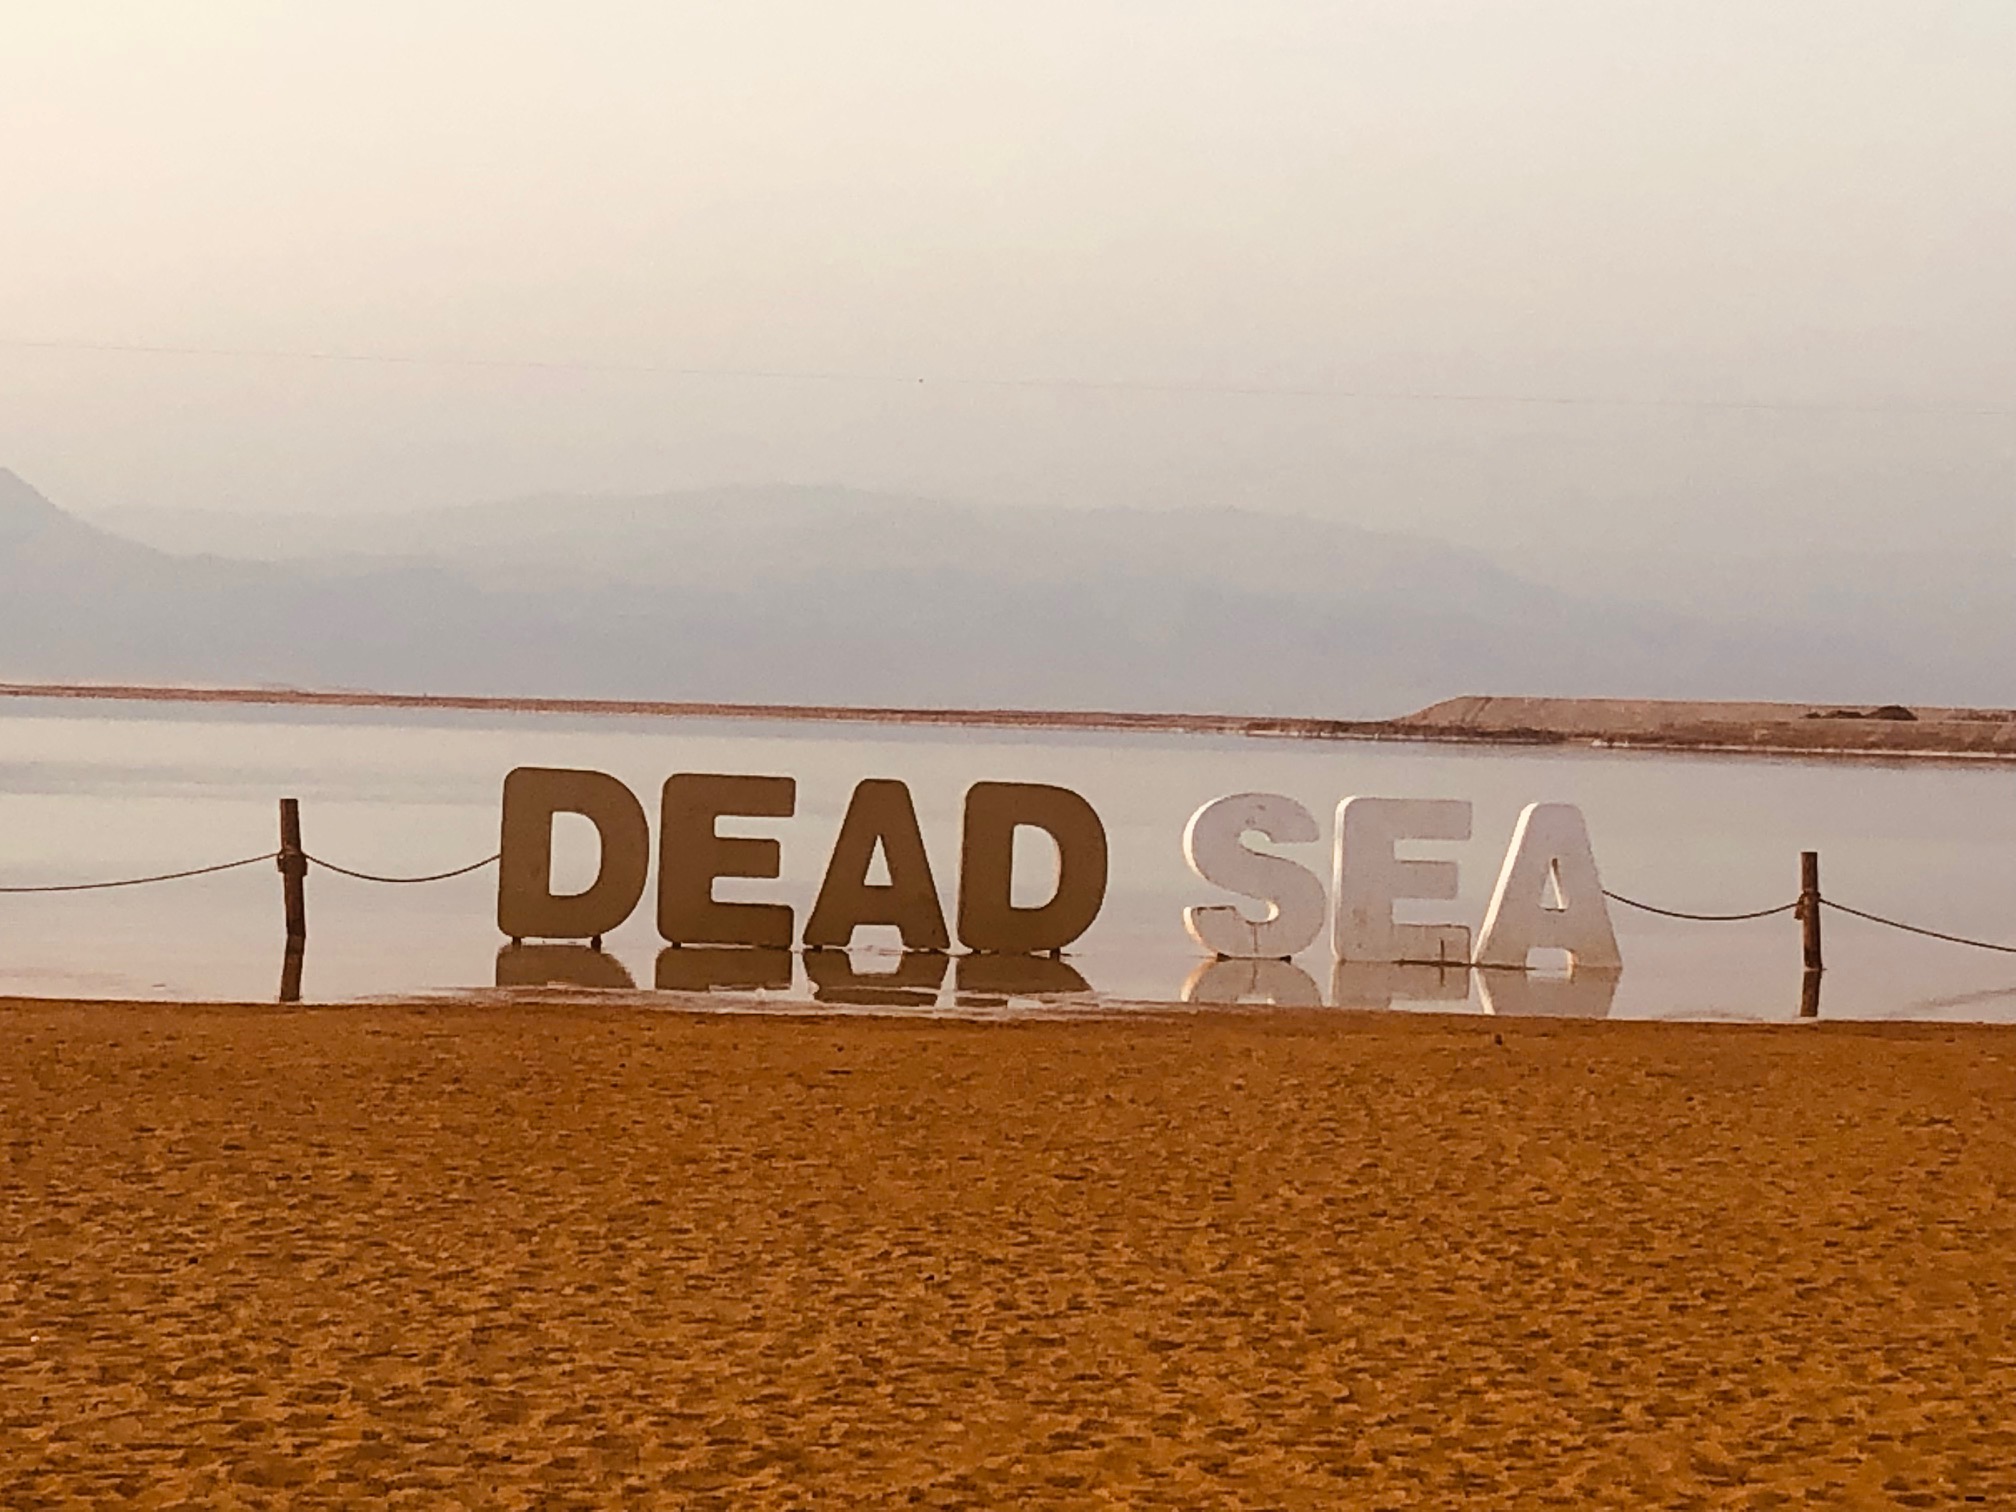 Dead Sea sign